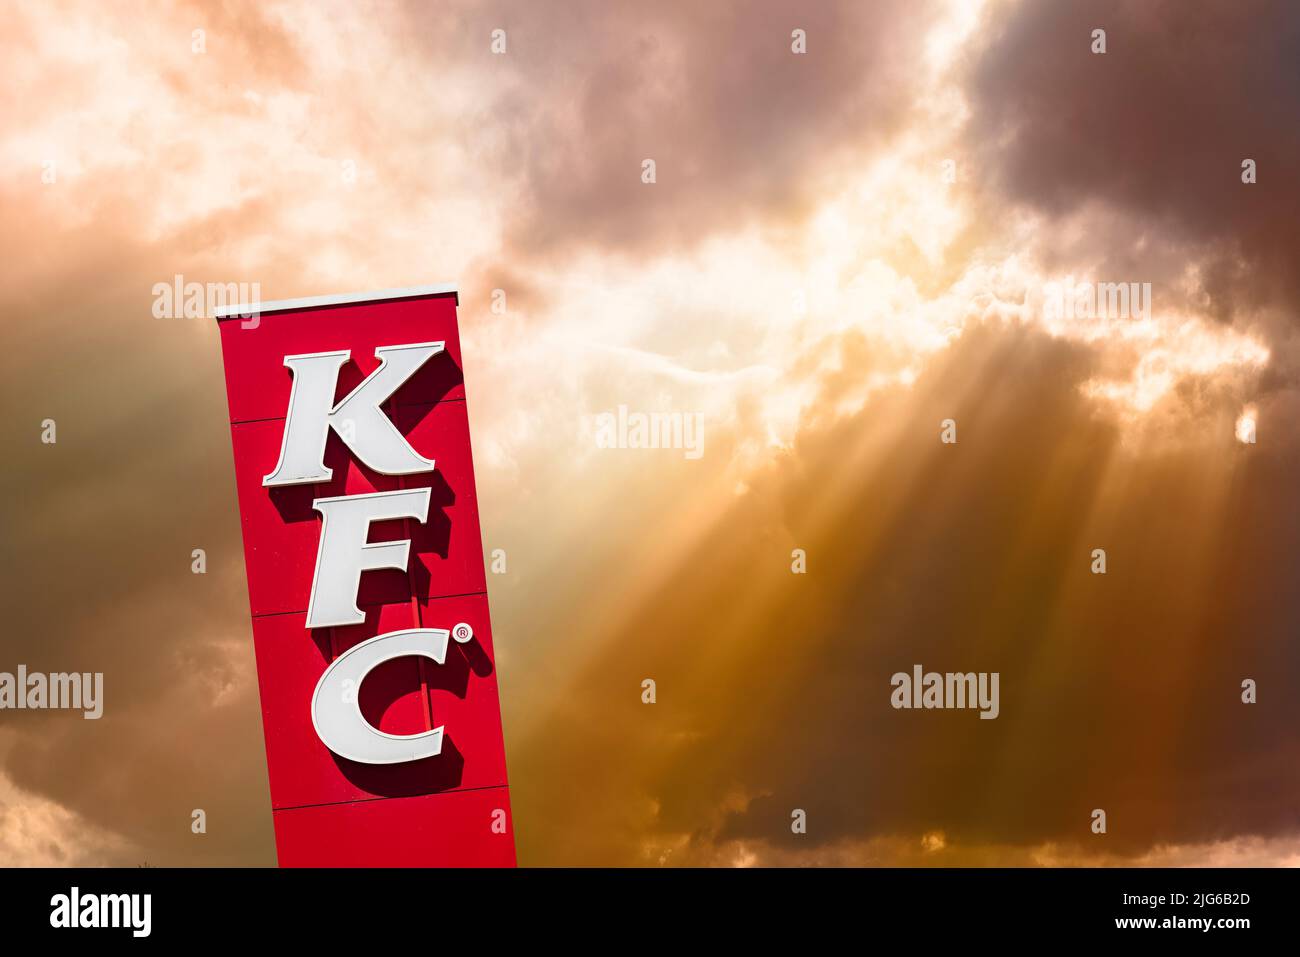 Werbeschild der Restaurantkette KFC Stock Photo